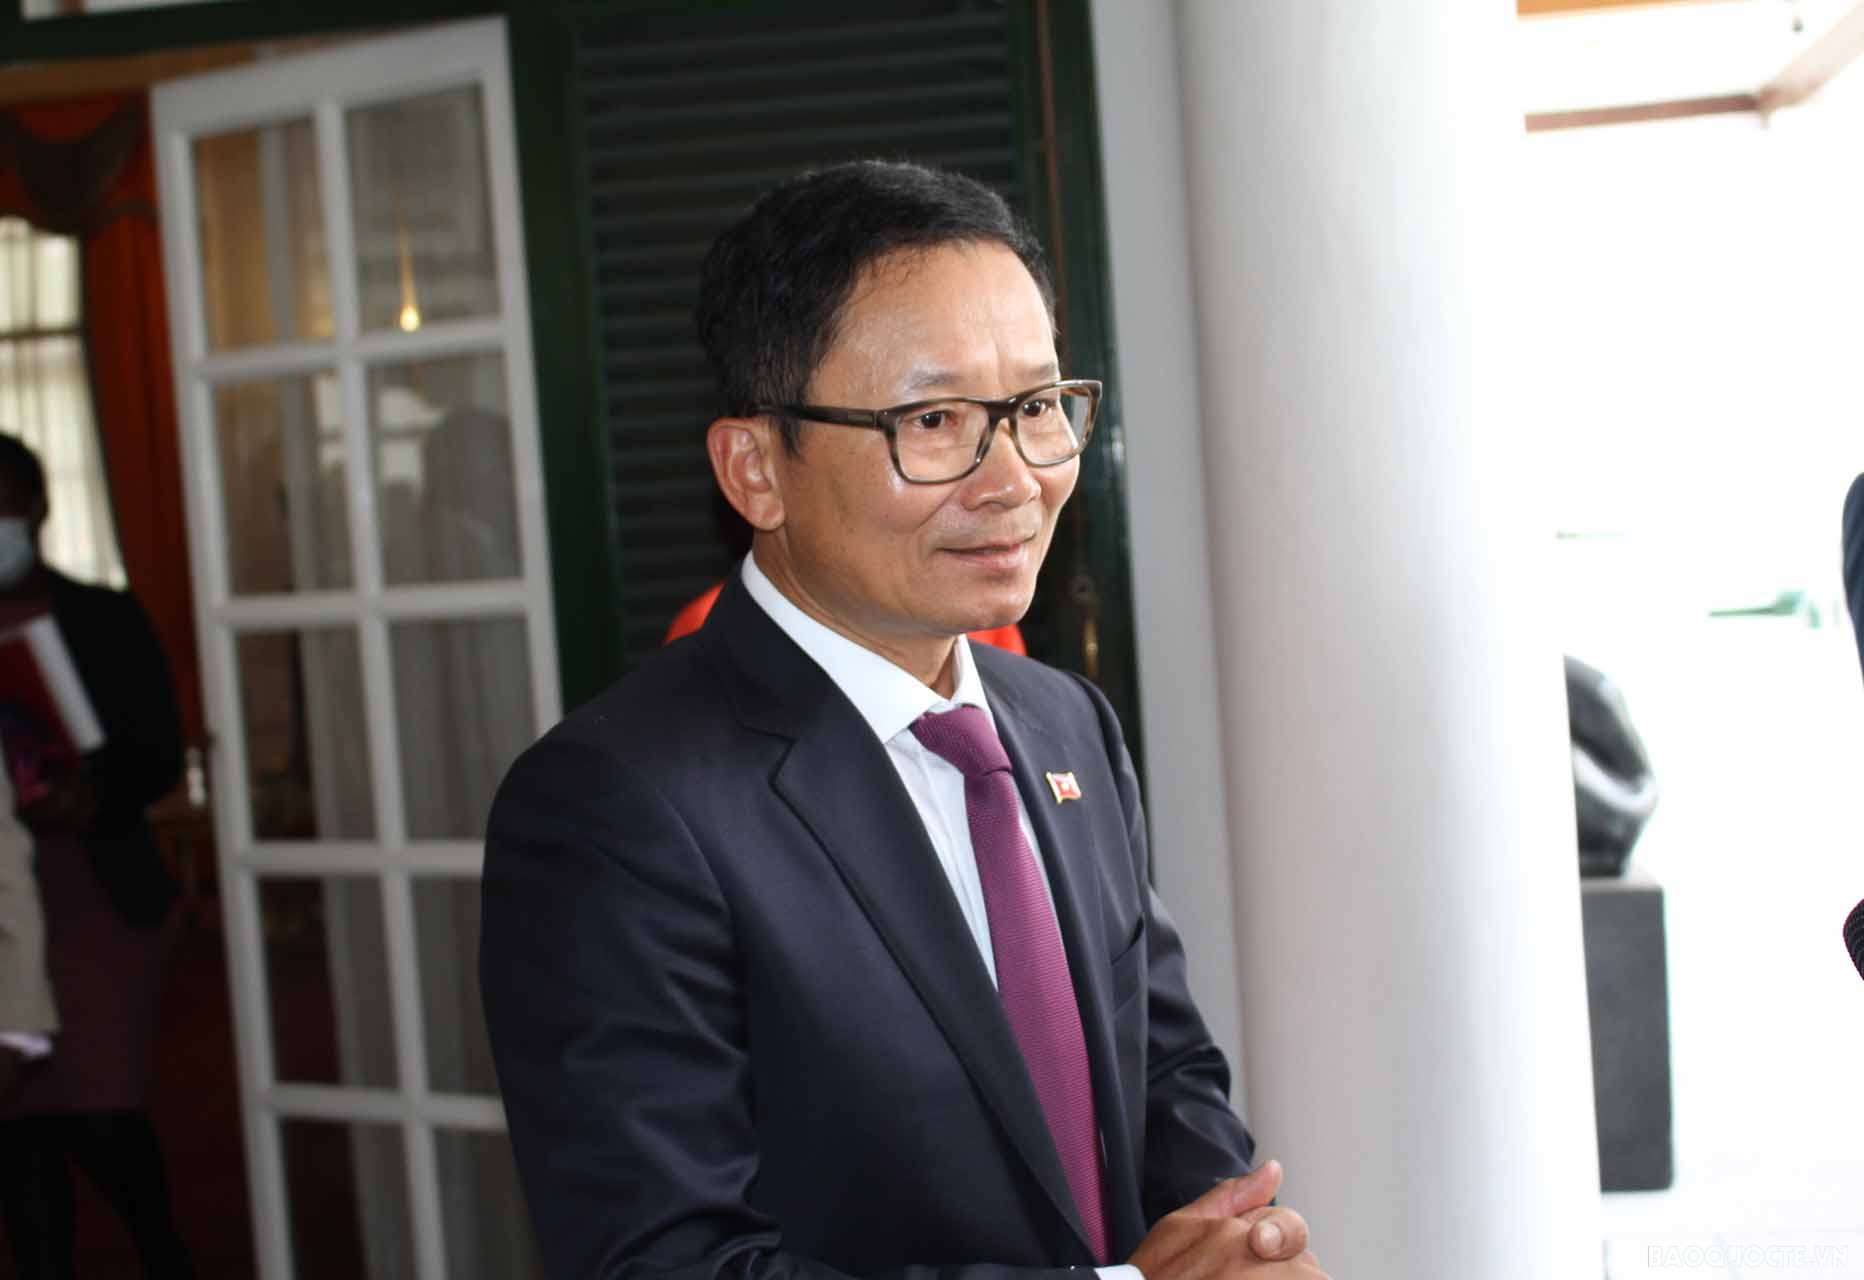 Đại sứ Hoàng Văn Lợi trả lời phỏng vấn sau Lễ trình Thư ủy nhiệm.